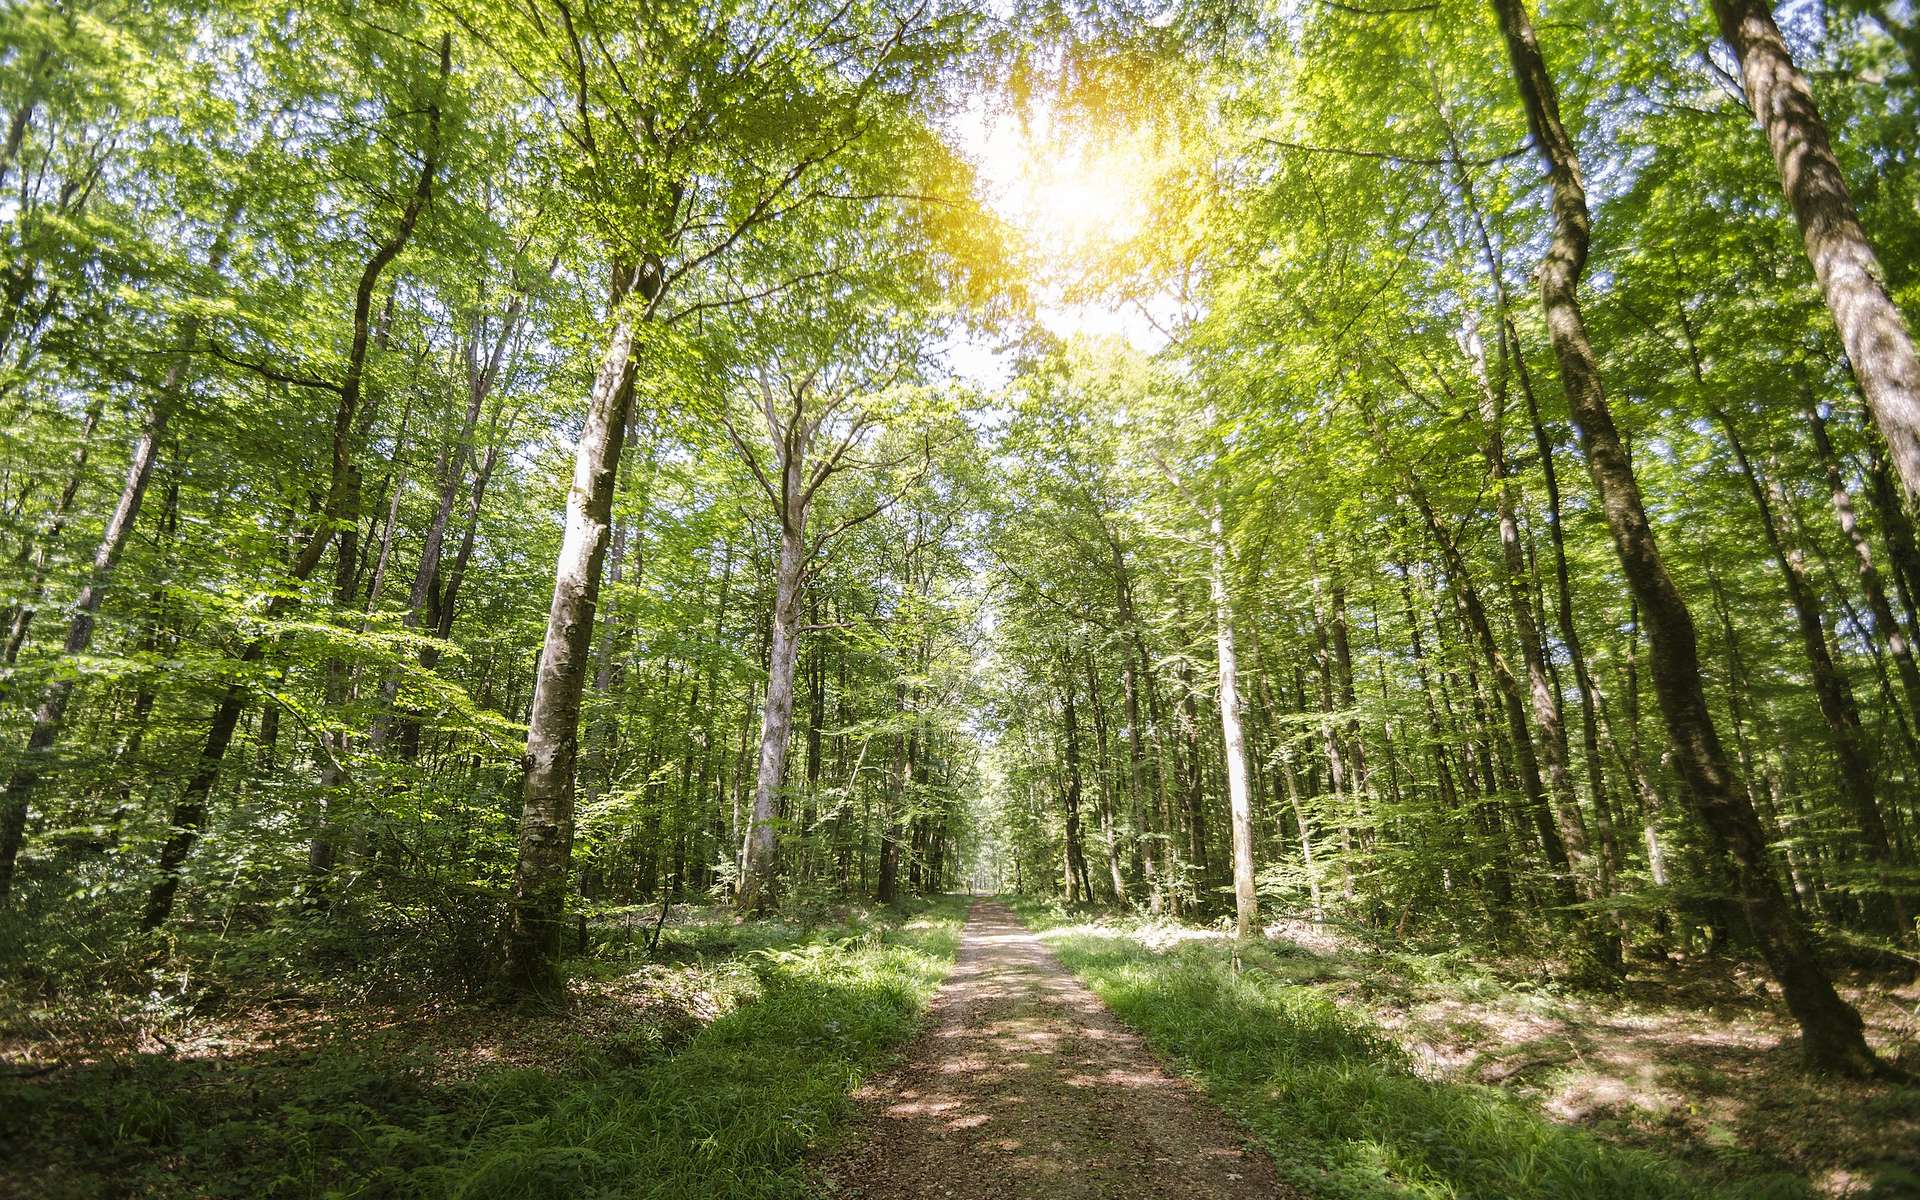 « Planter un milliard d'arbres en France d'ici 2030 » : est-ce possible et souhaitable ?